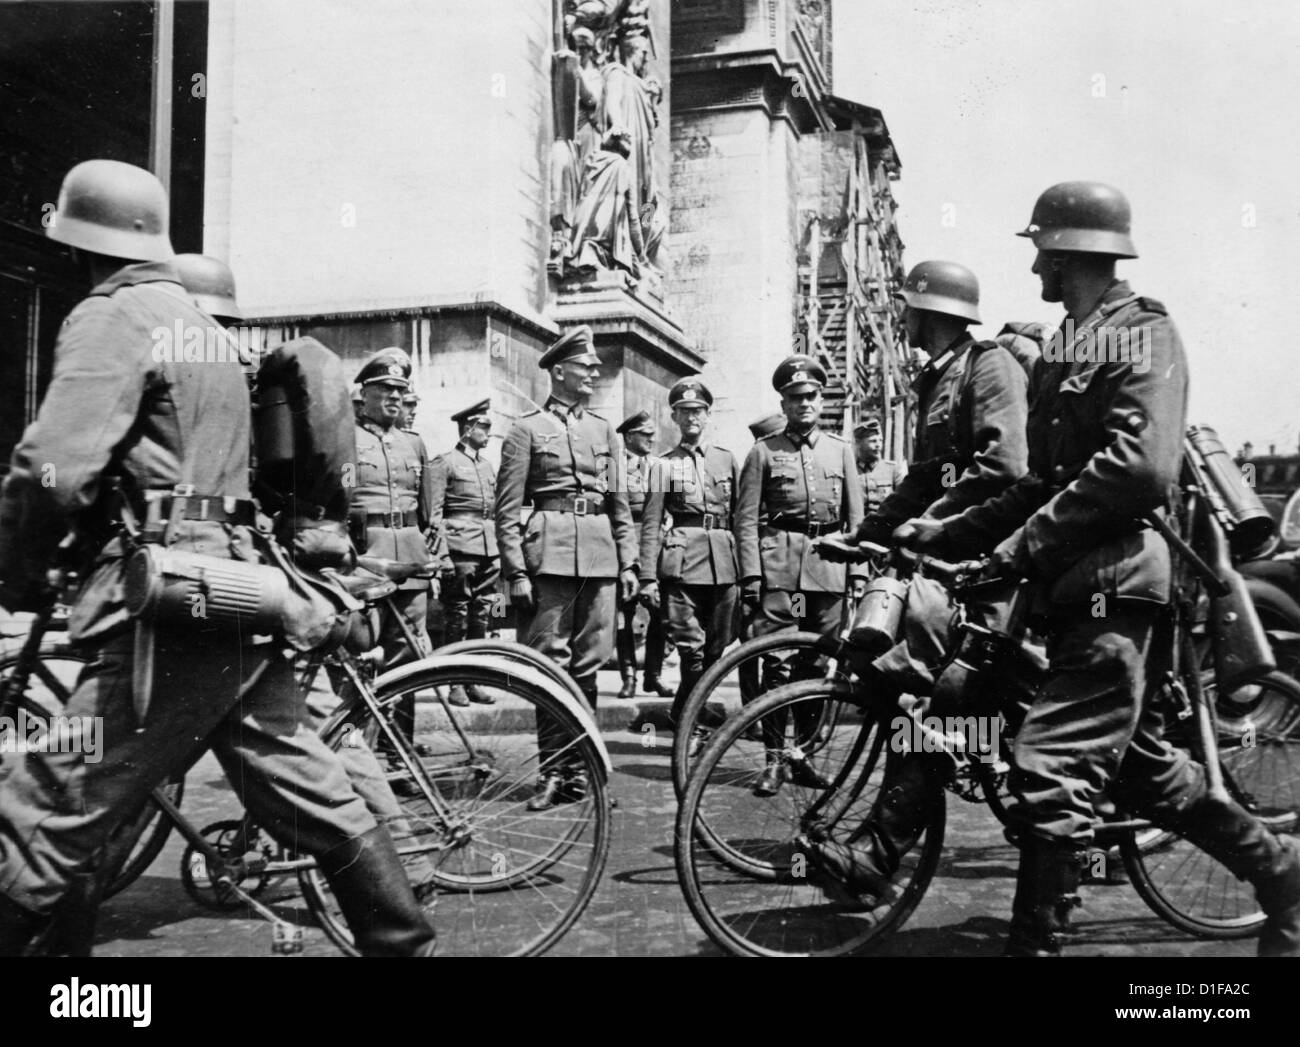 Le truppe tedesche invadono Parigi nel giugno 1940 - il battaglione tedesco della bicicletta marciano lungo i generali tedeschi all'Arco di Trionfo. Fotoarchiv für Zeitgeschichte Foto Stock